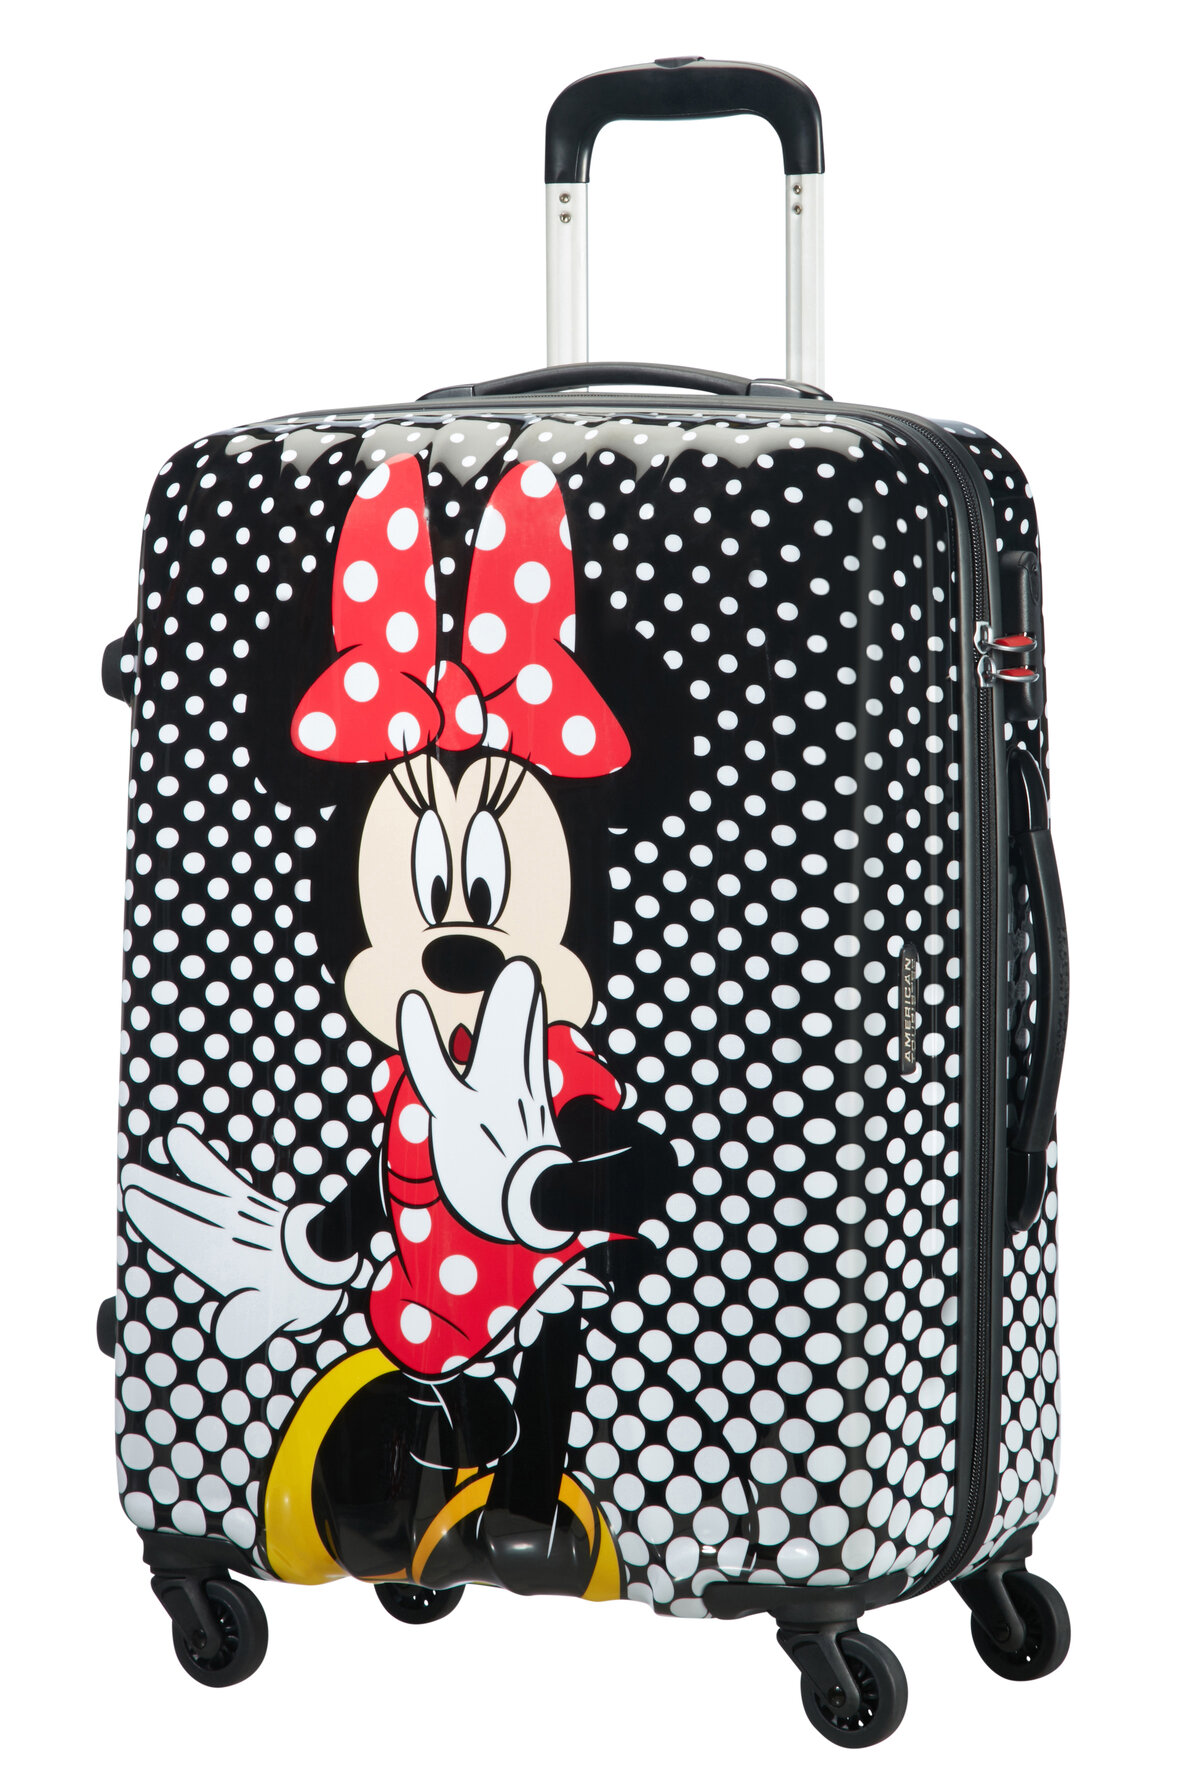 Walizka American Tourister Minie Mouse Disney Legends spin.65/24 widok na walizkę pod skosem